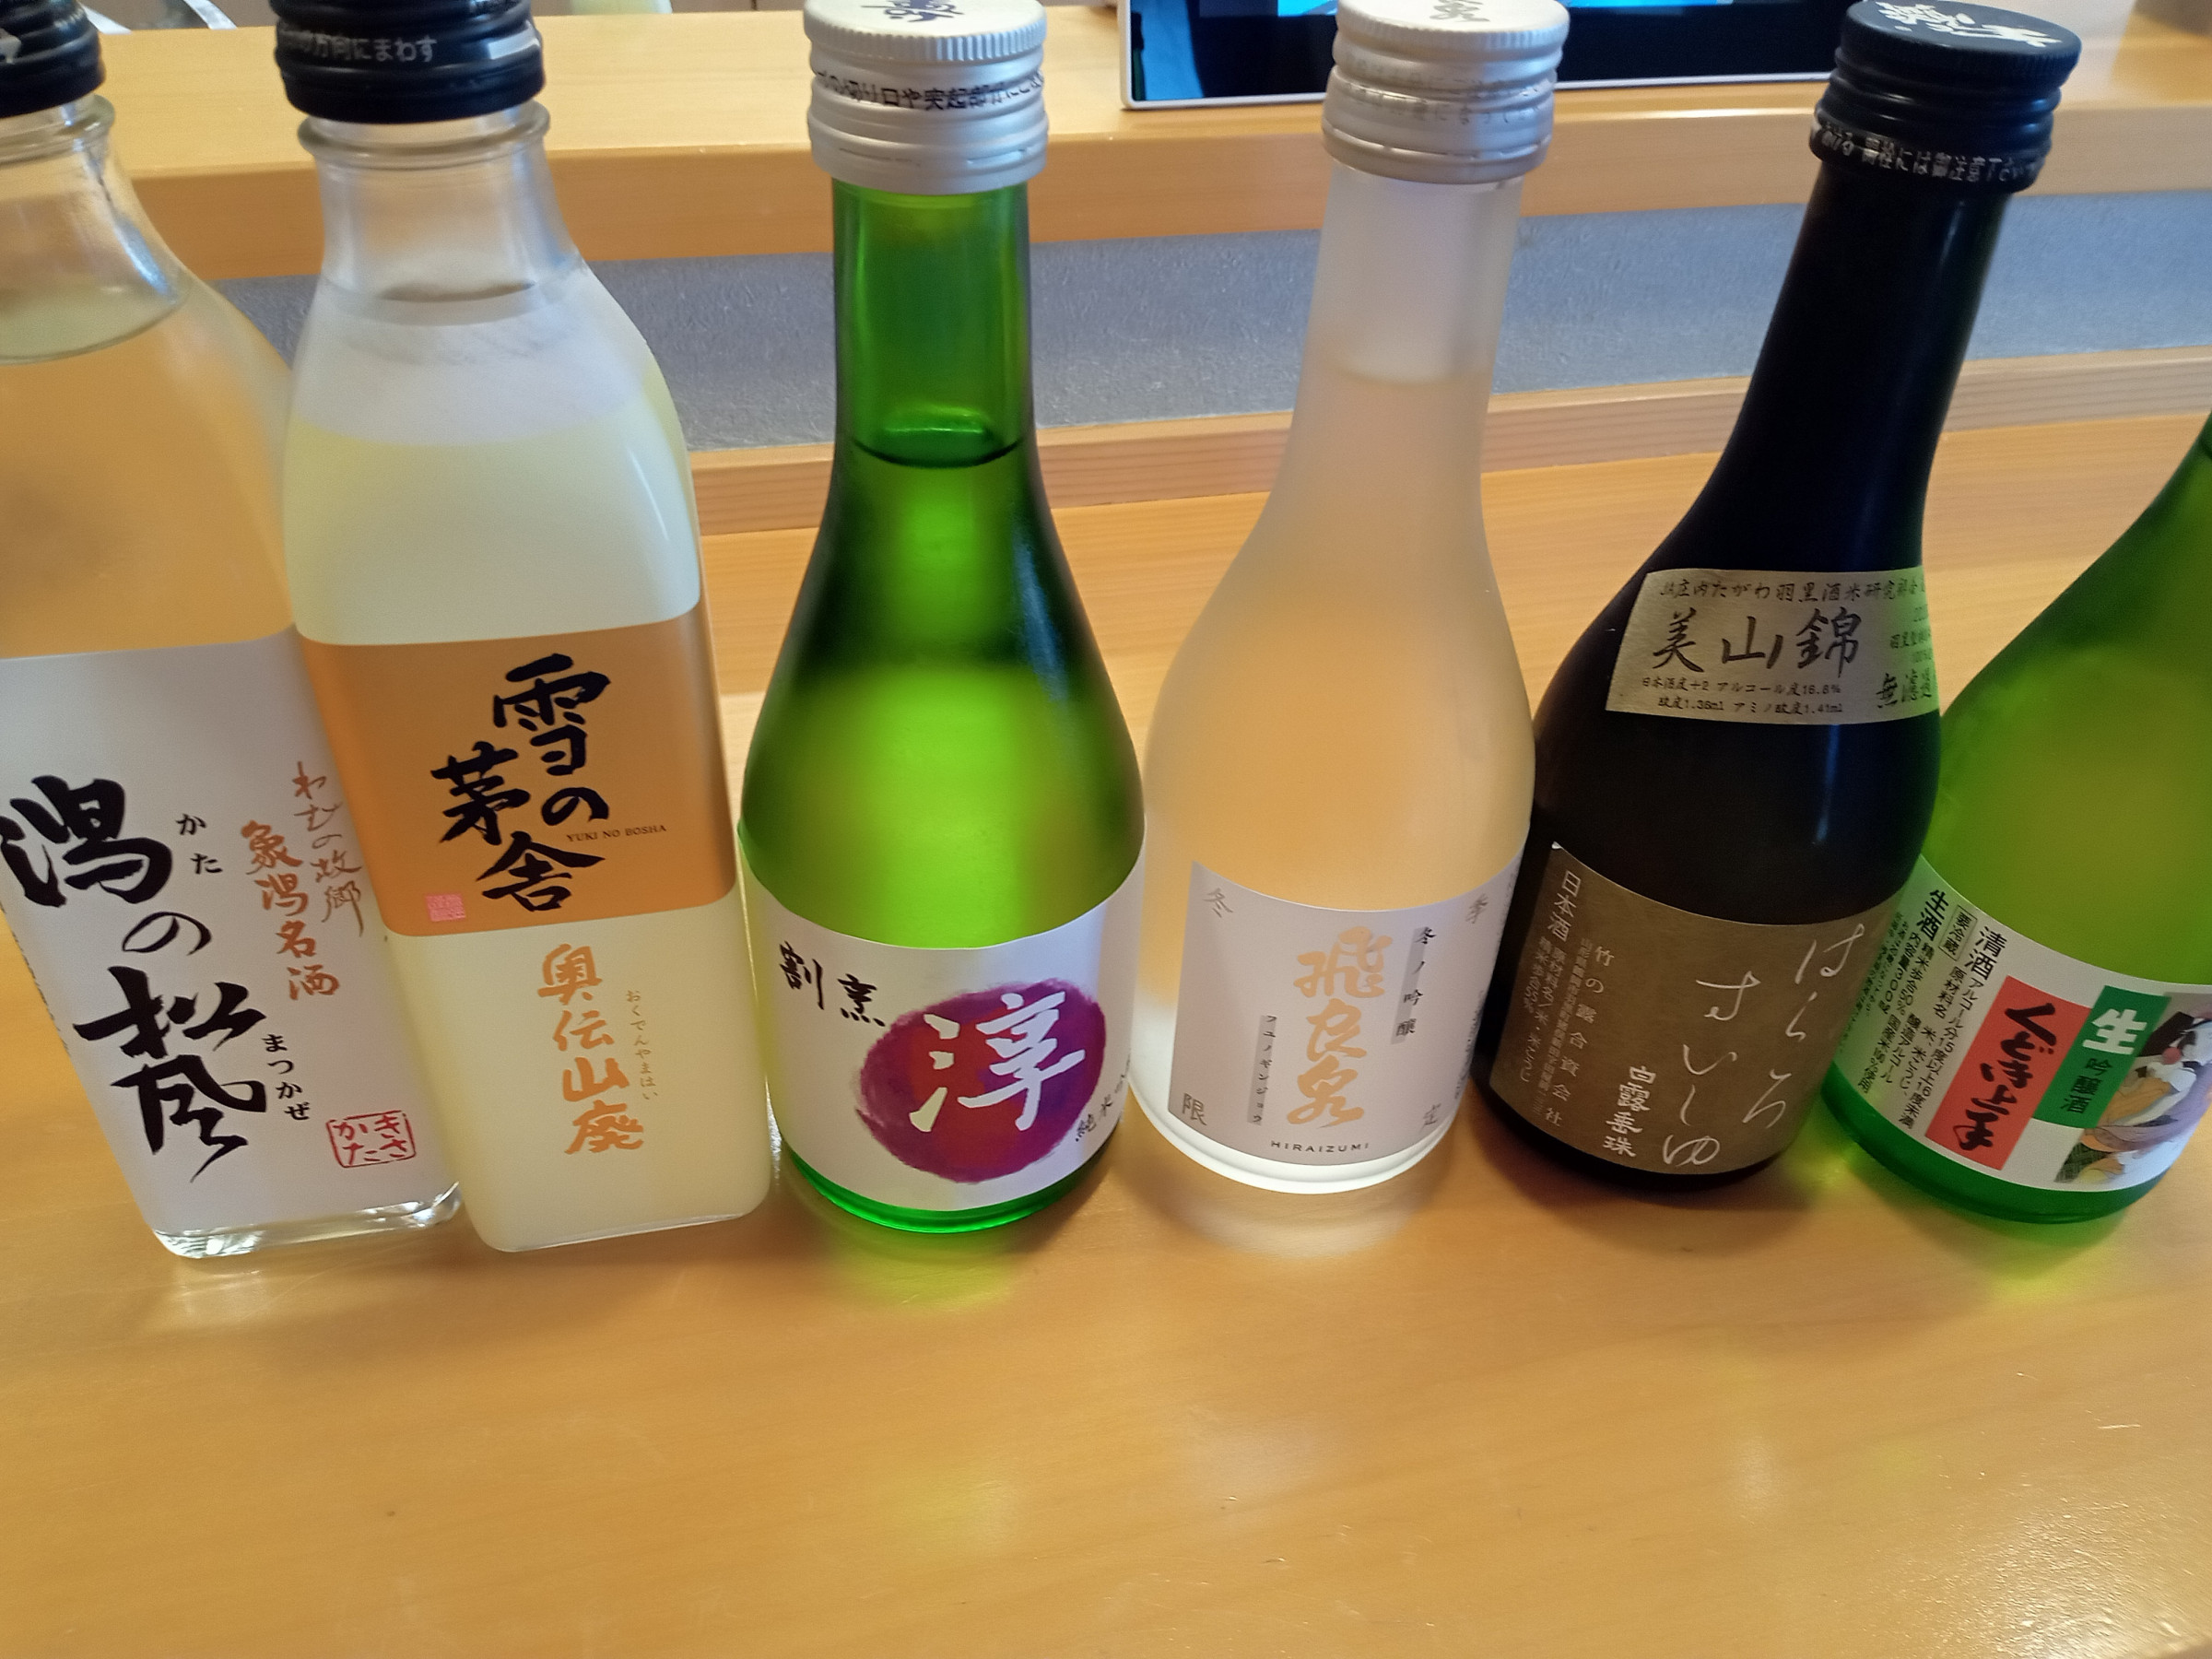 日本酒もいろいろお楽しみいただけます